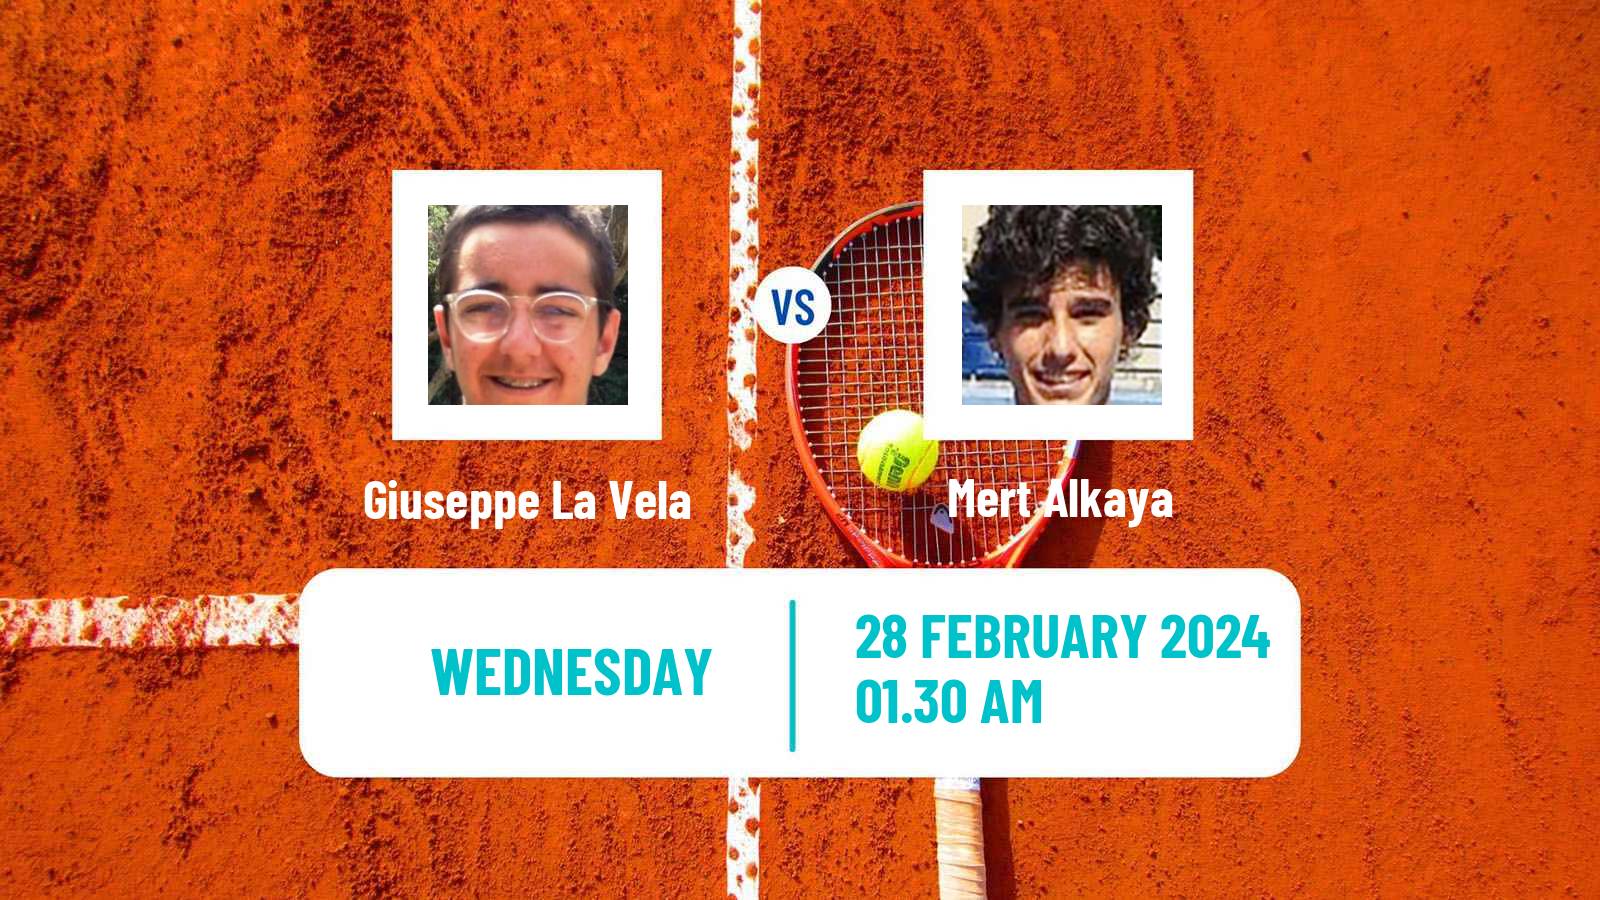 Tennis ITF M15 Antalya 4 Men Giuseppe La Vela - Mert Alkaya